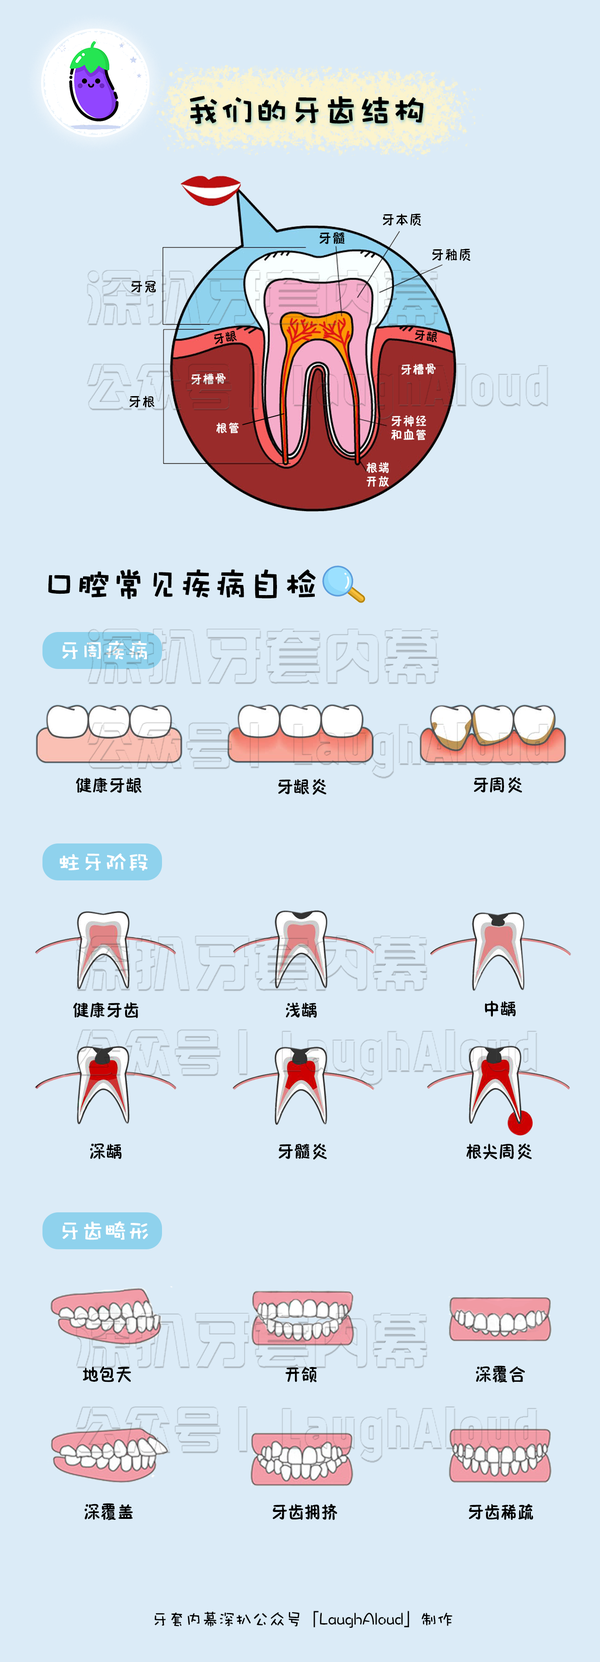 茄子 额外找了一些牙齿结构图,让大家对自己的口腔基本状况以及常见